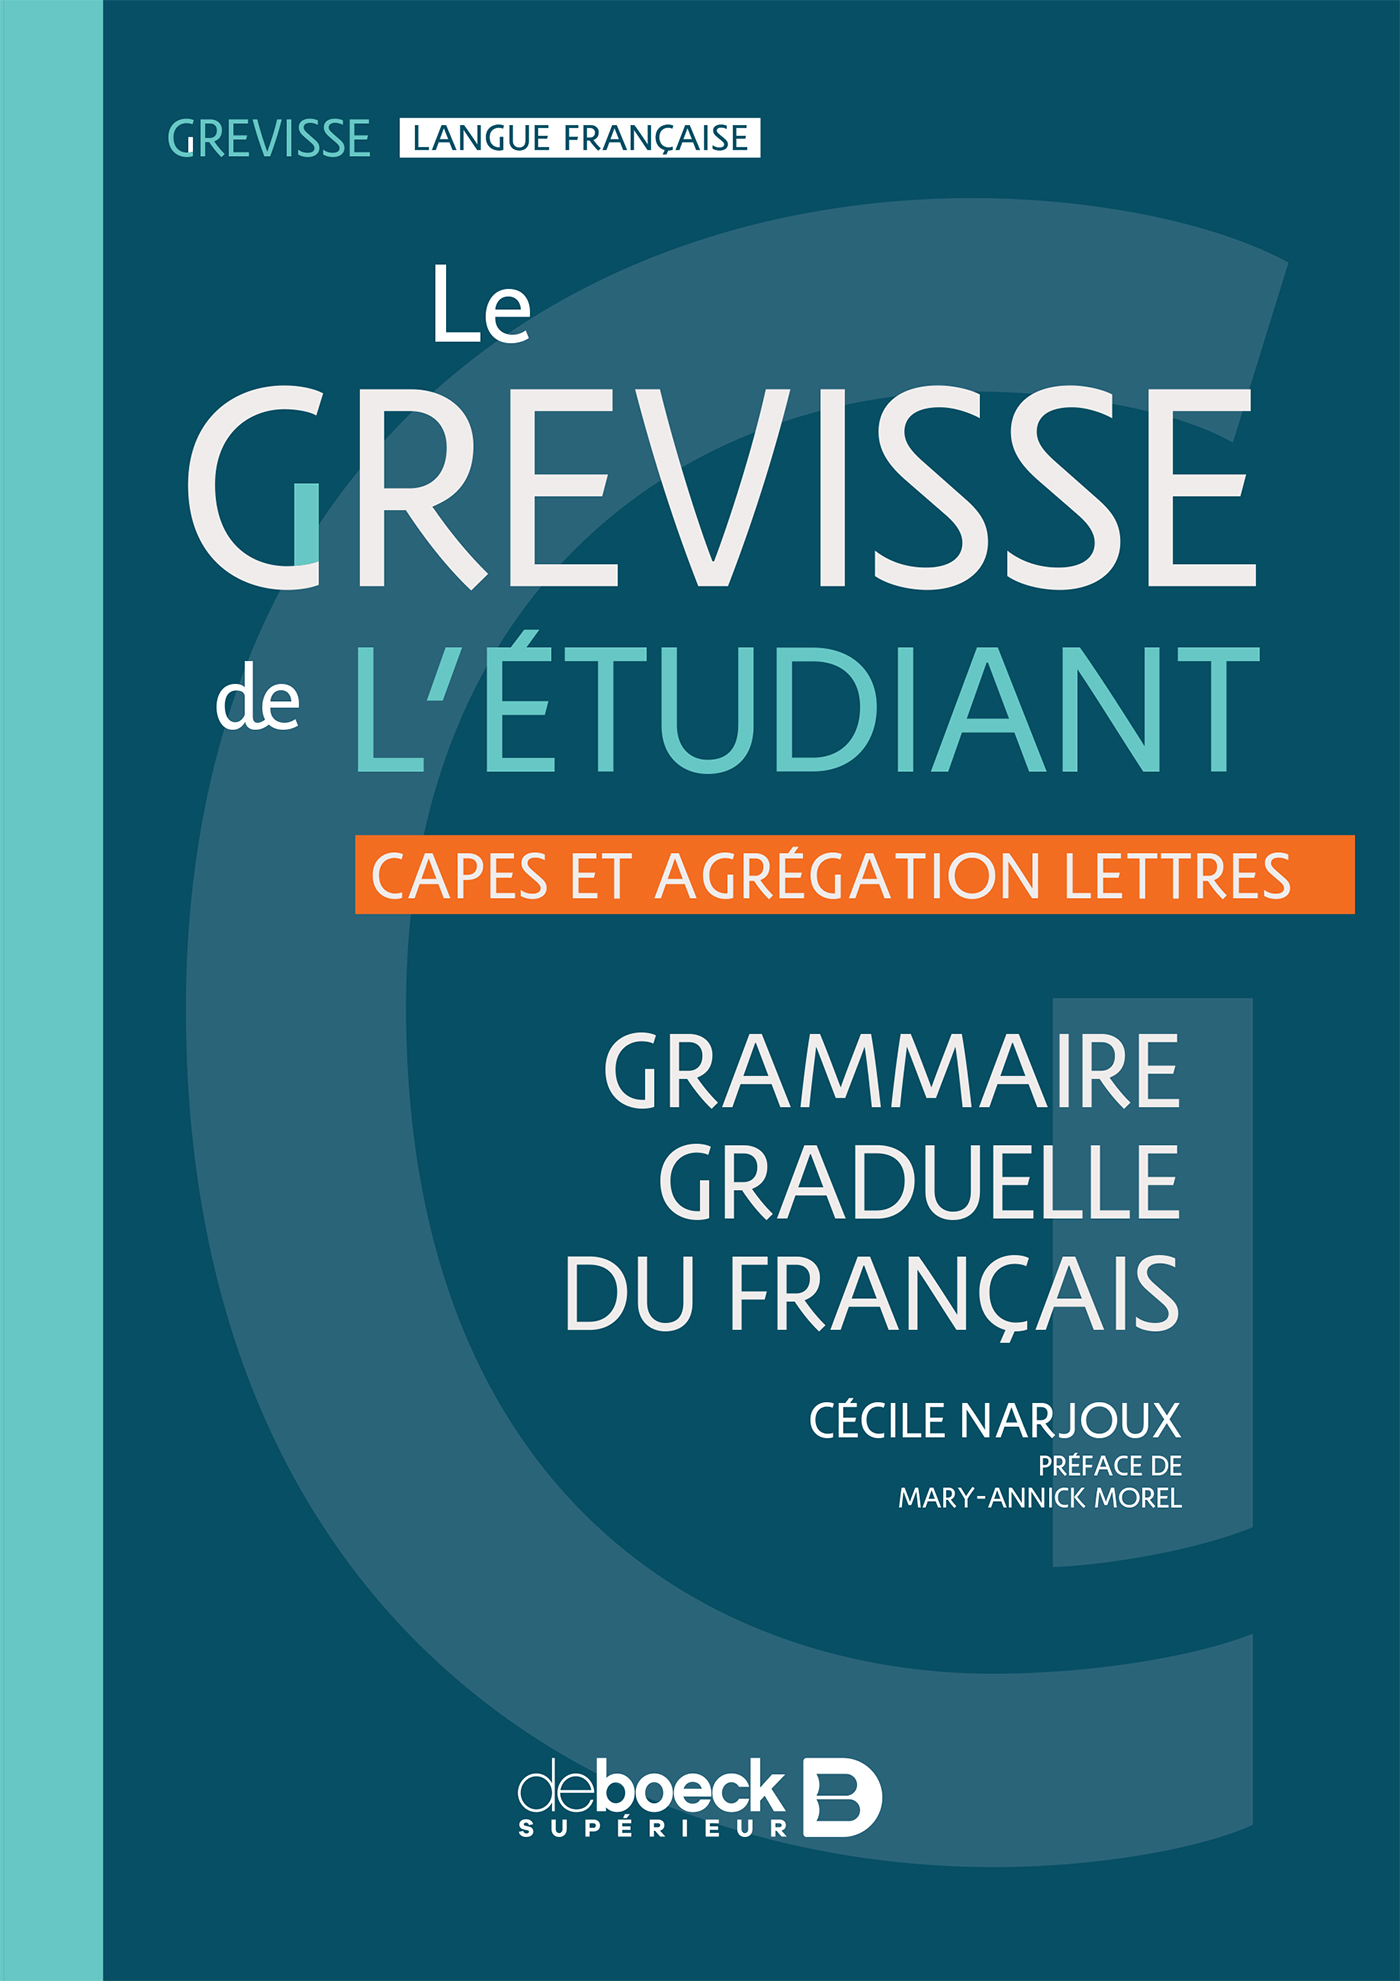 法语专业必看现代语言学成果渐进式法语语法 Le grevisse de l'étudiant (Grévisse et langue française)